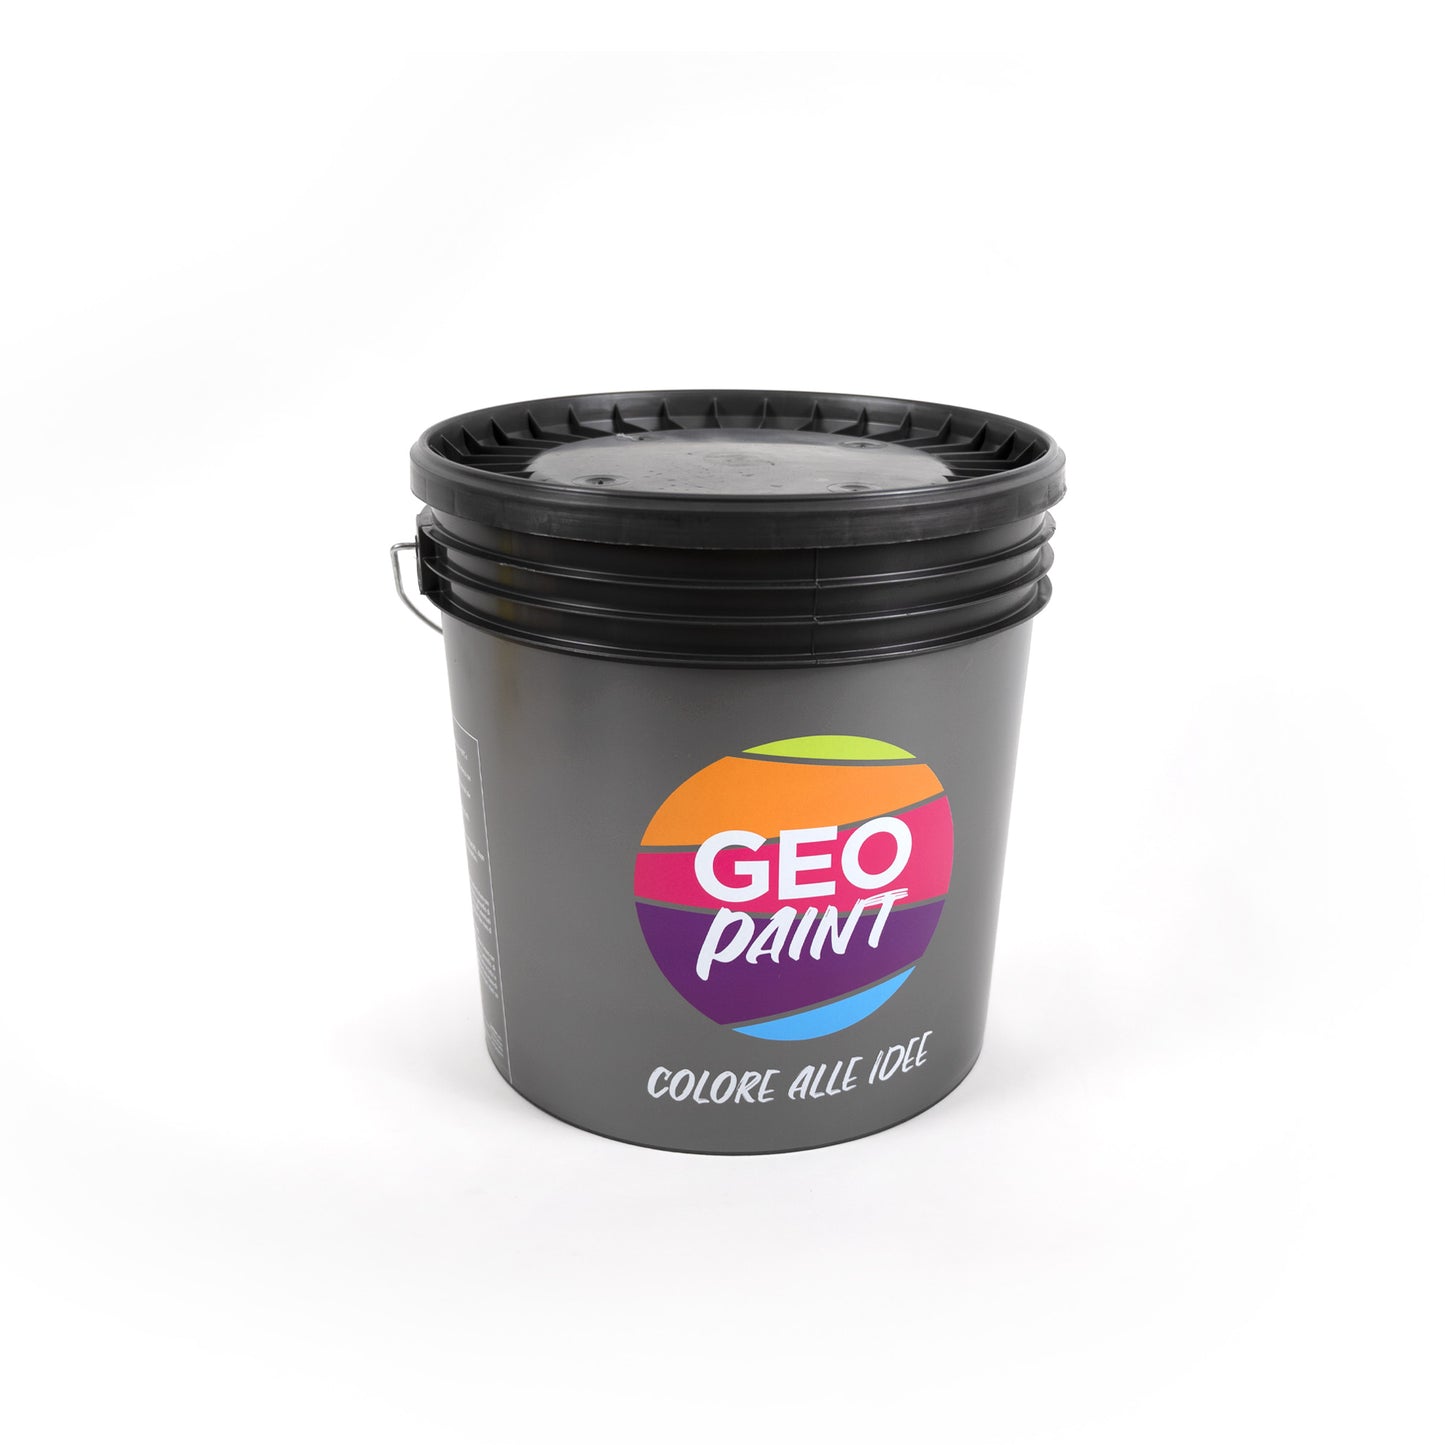 Rextop-grana-fine-retro-Resina-monocomponente-per-pavimenti-geopaint-colorifici-genova